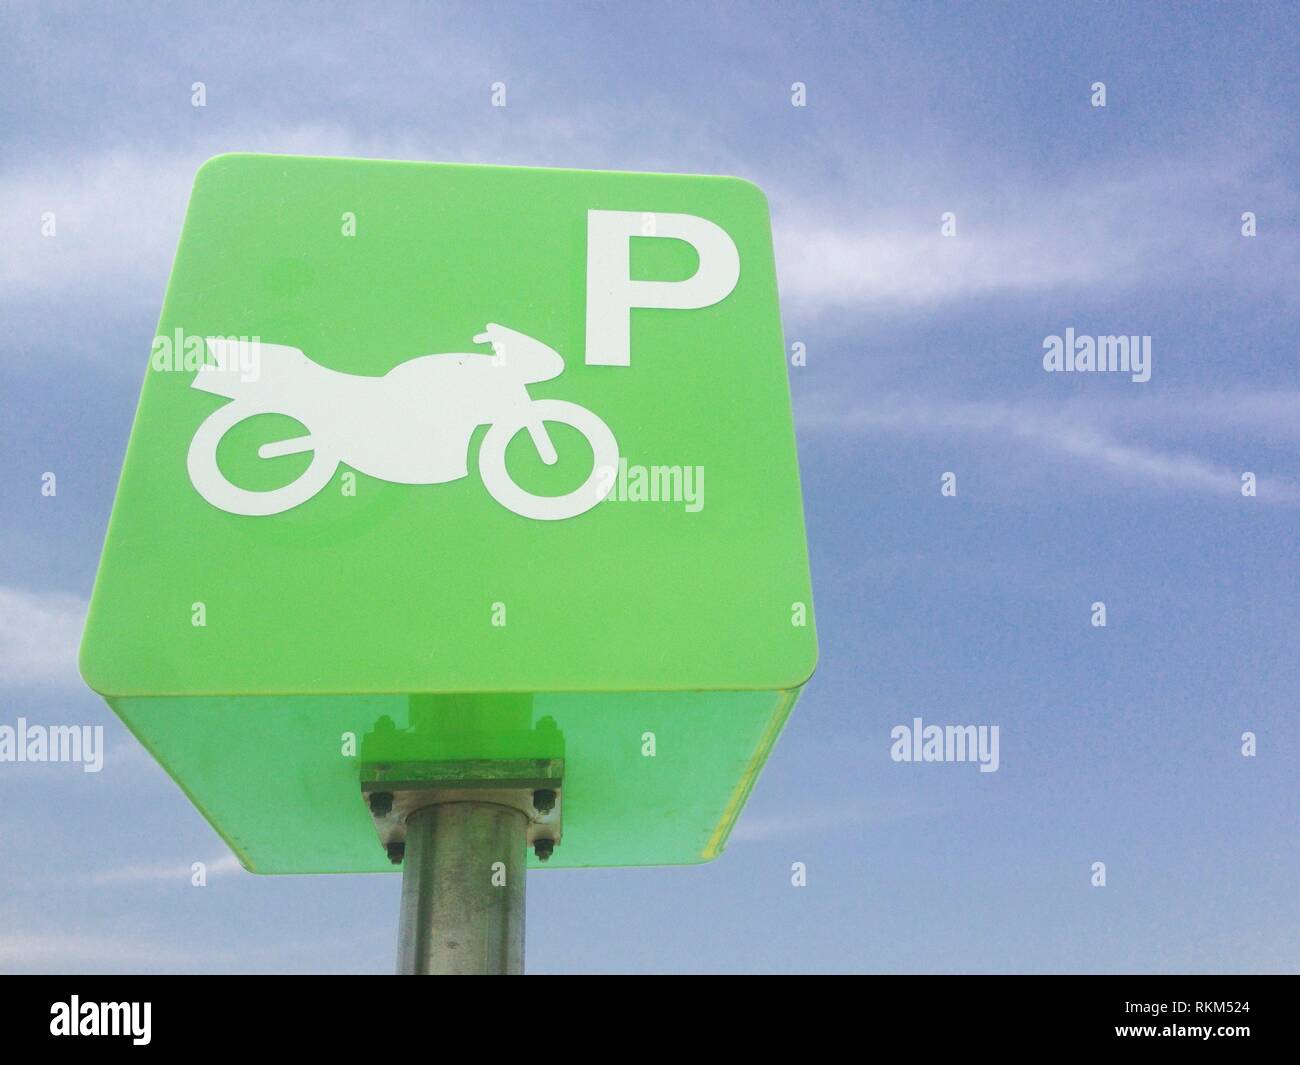 Reservados motocicleta polo parque verde signo contra el cielo azul. Diseño de cubos de color verde. Foto de stock